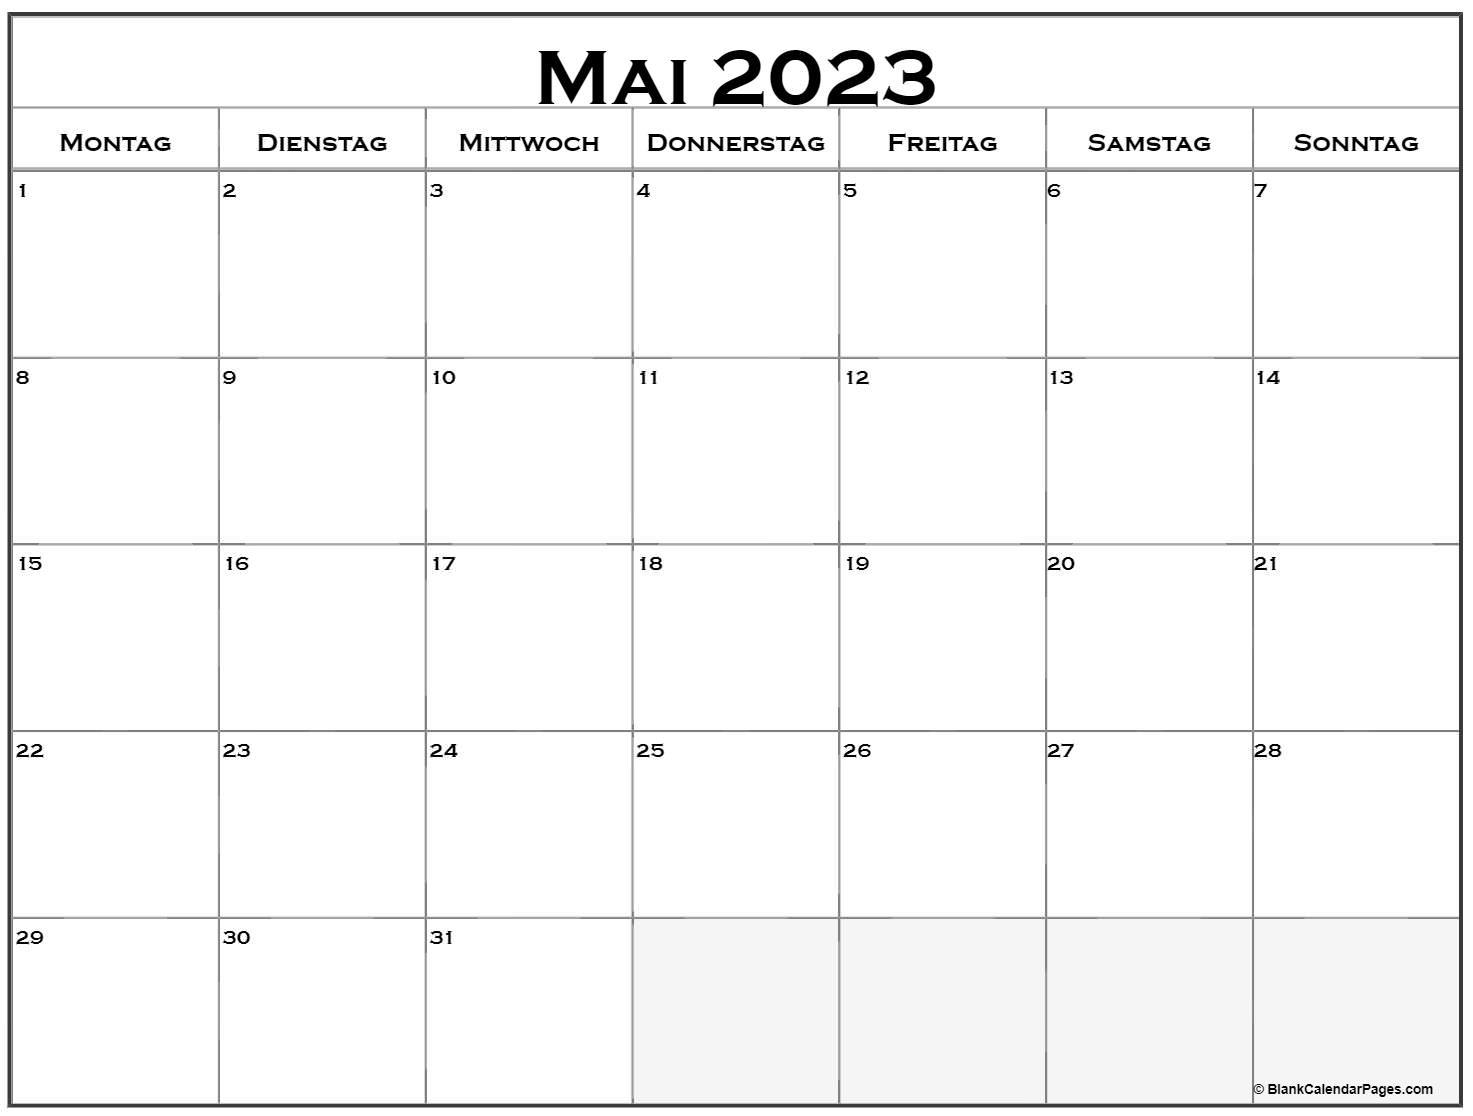 Mai 2023 kalender auf Deutsch | kalender 2023